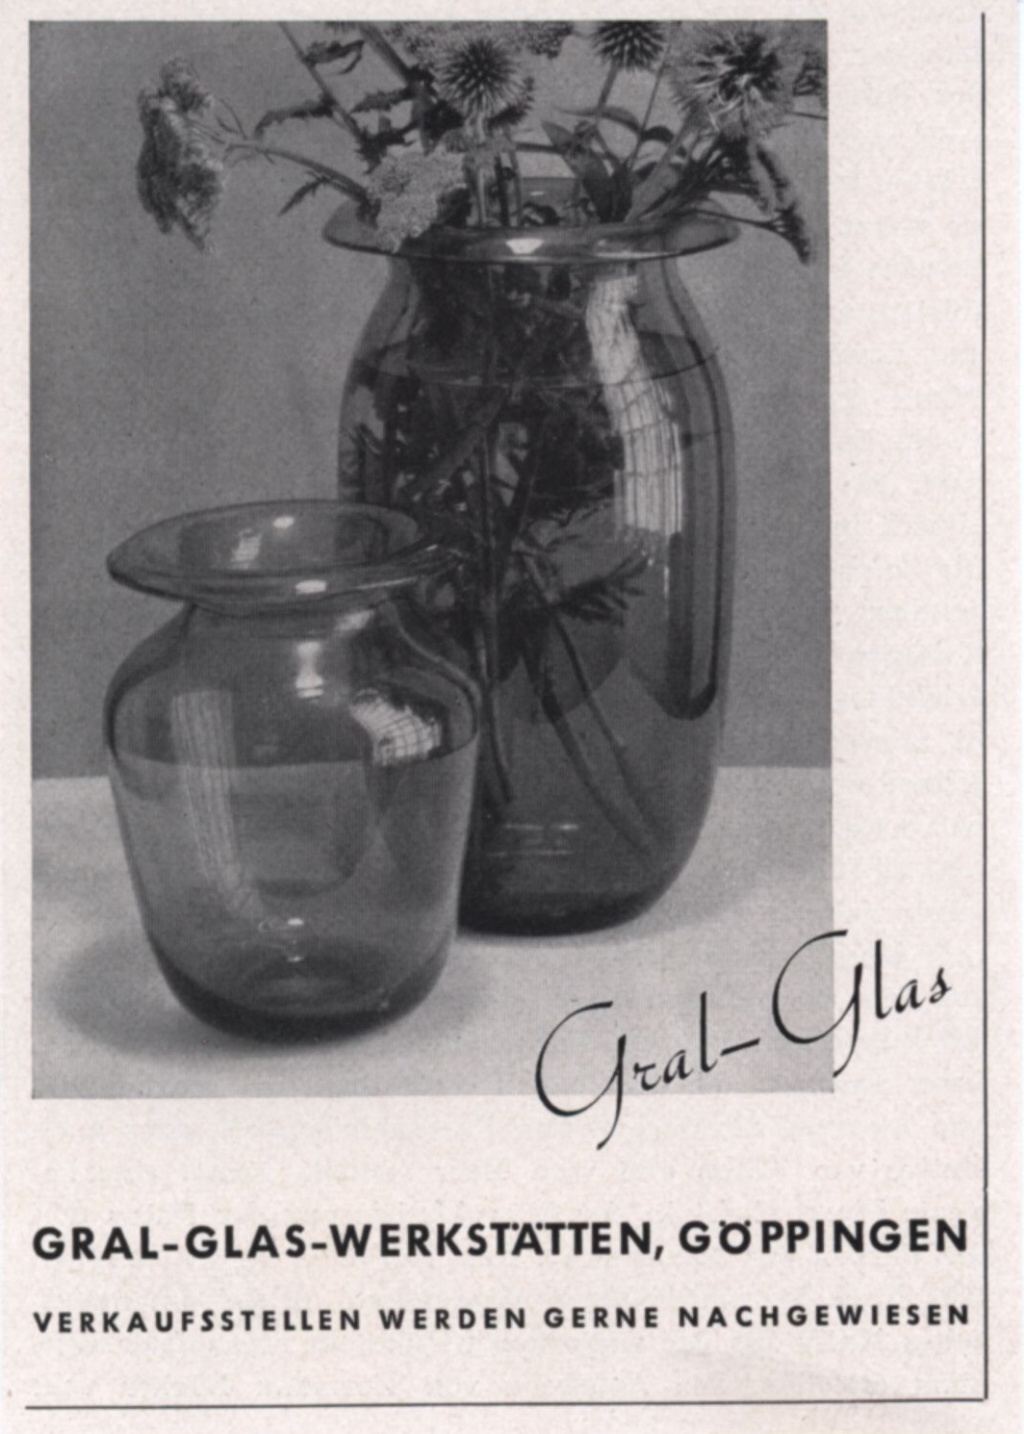 "Gral-Glas 1939"